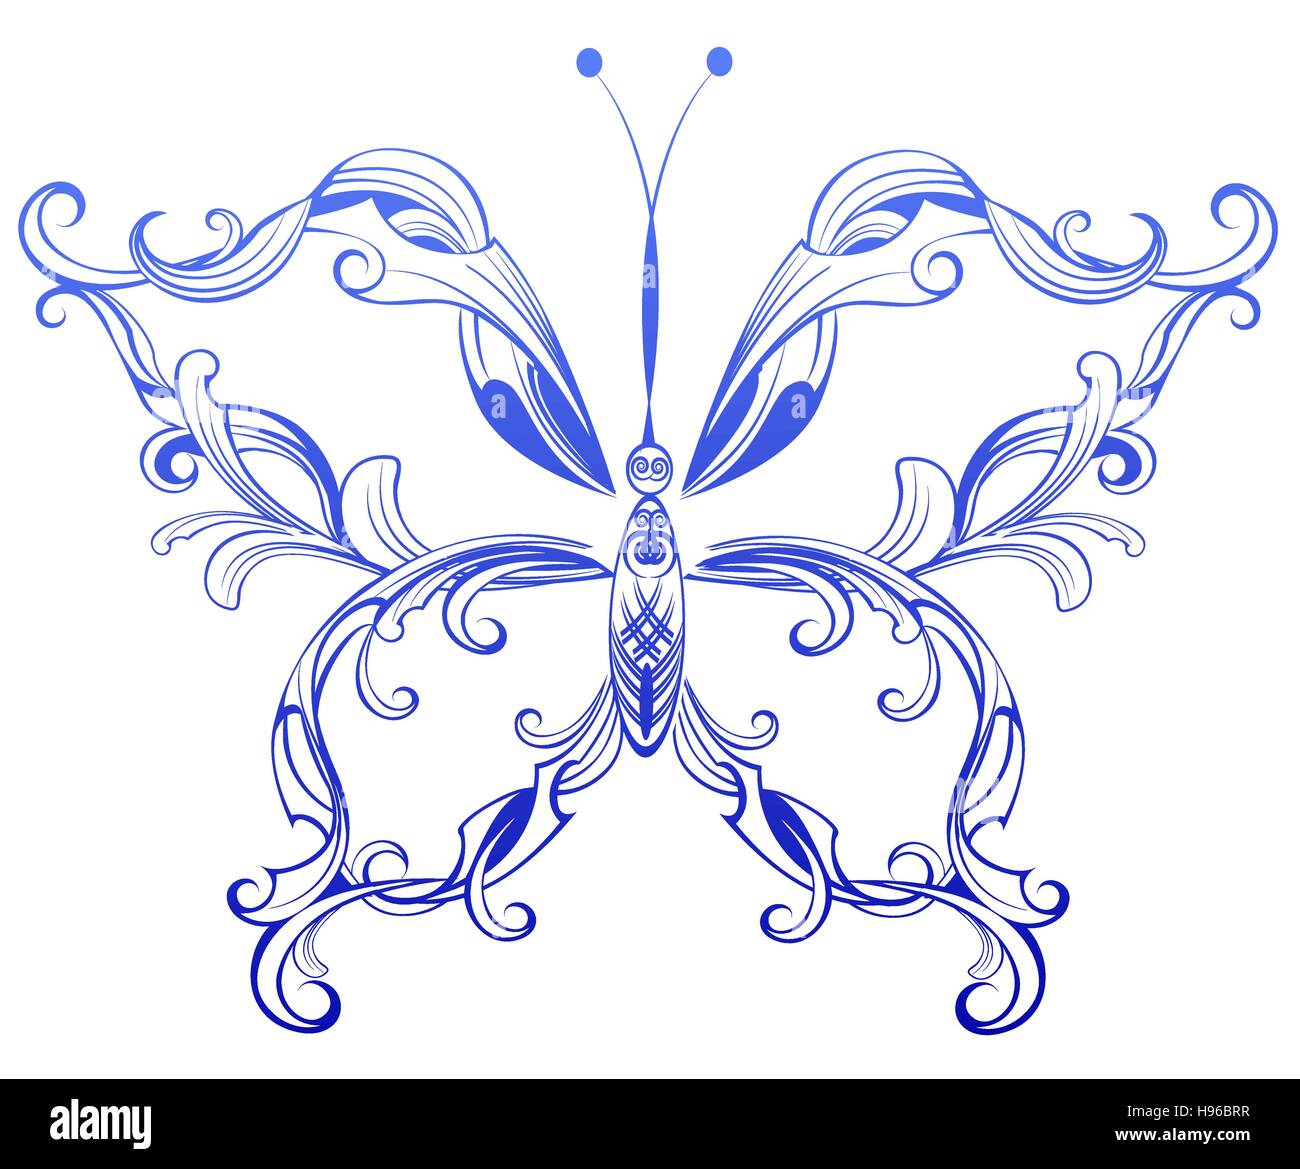 Artistiquement peintes en bleu avec des ailes de papillon à motifs sur fond blanc. Illustration de Vecteur